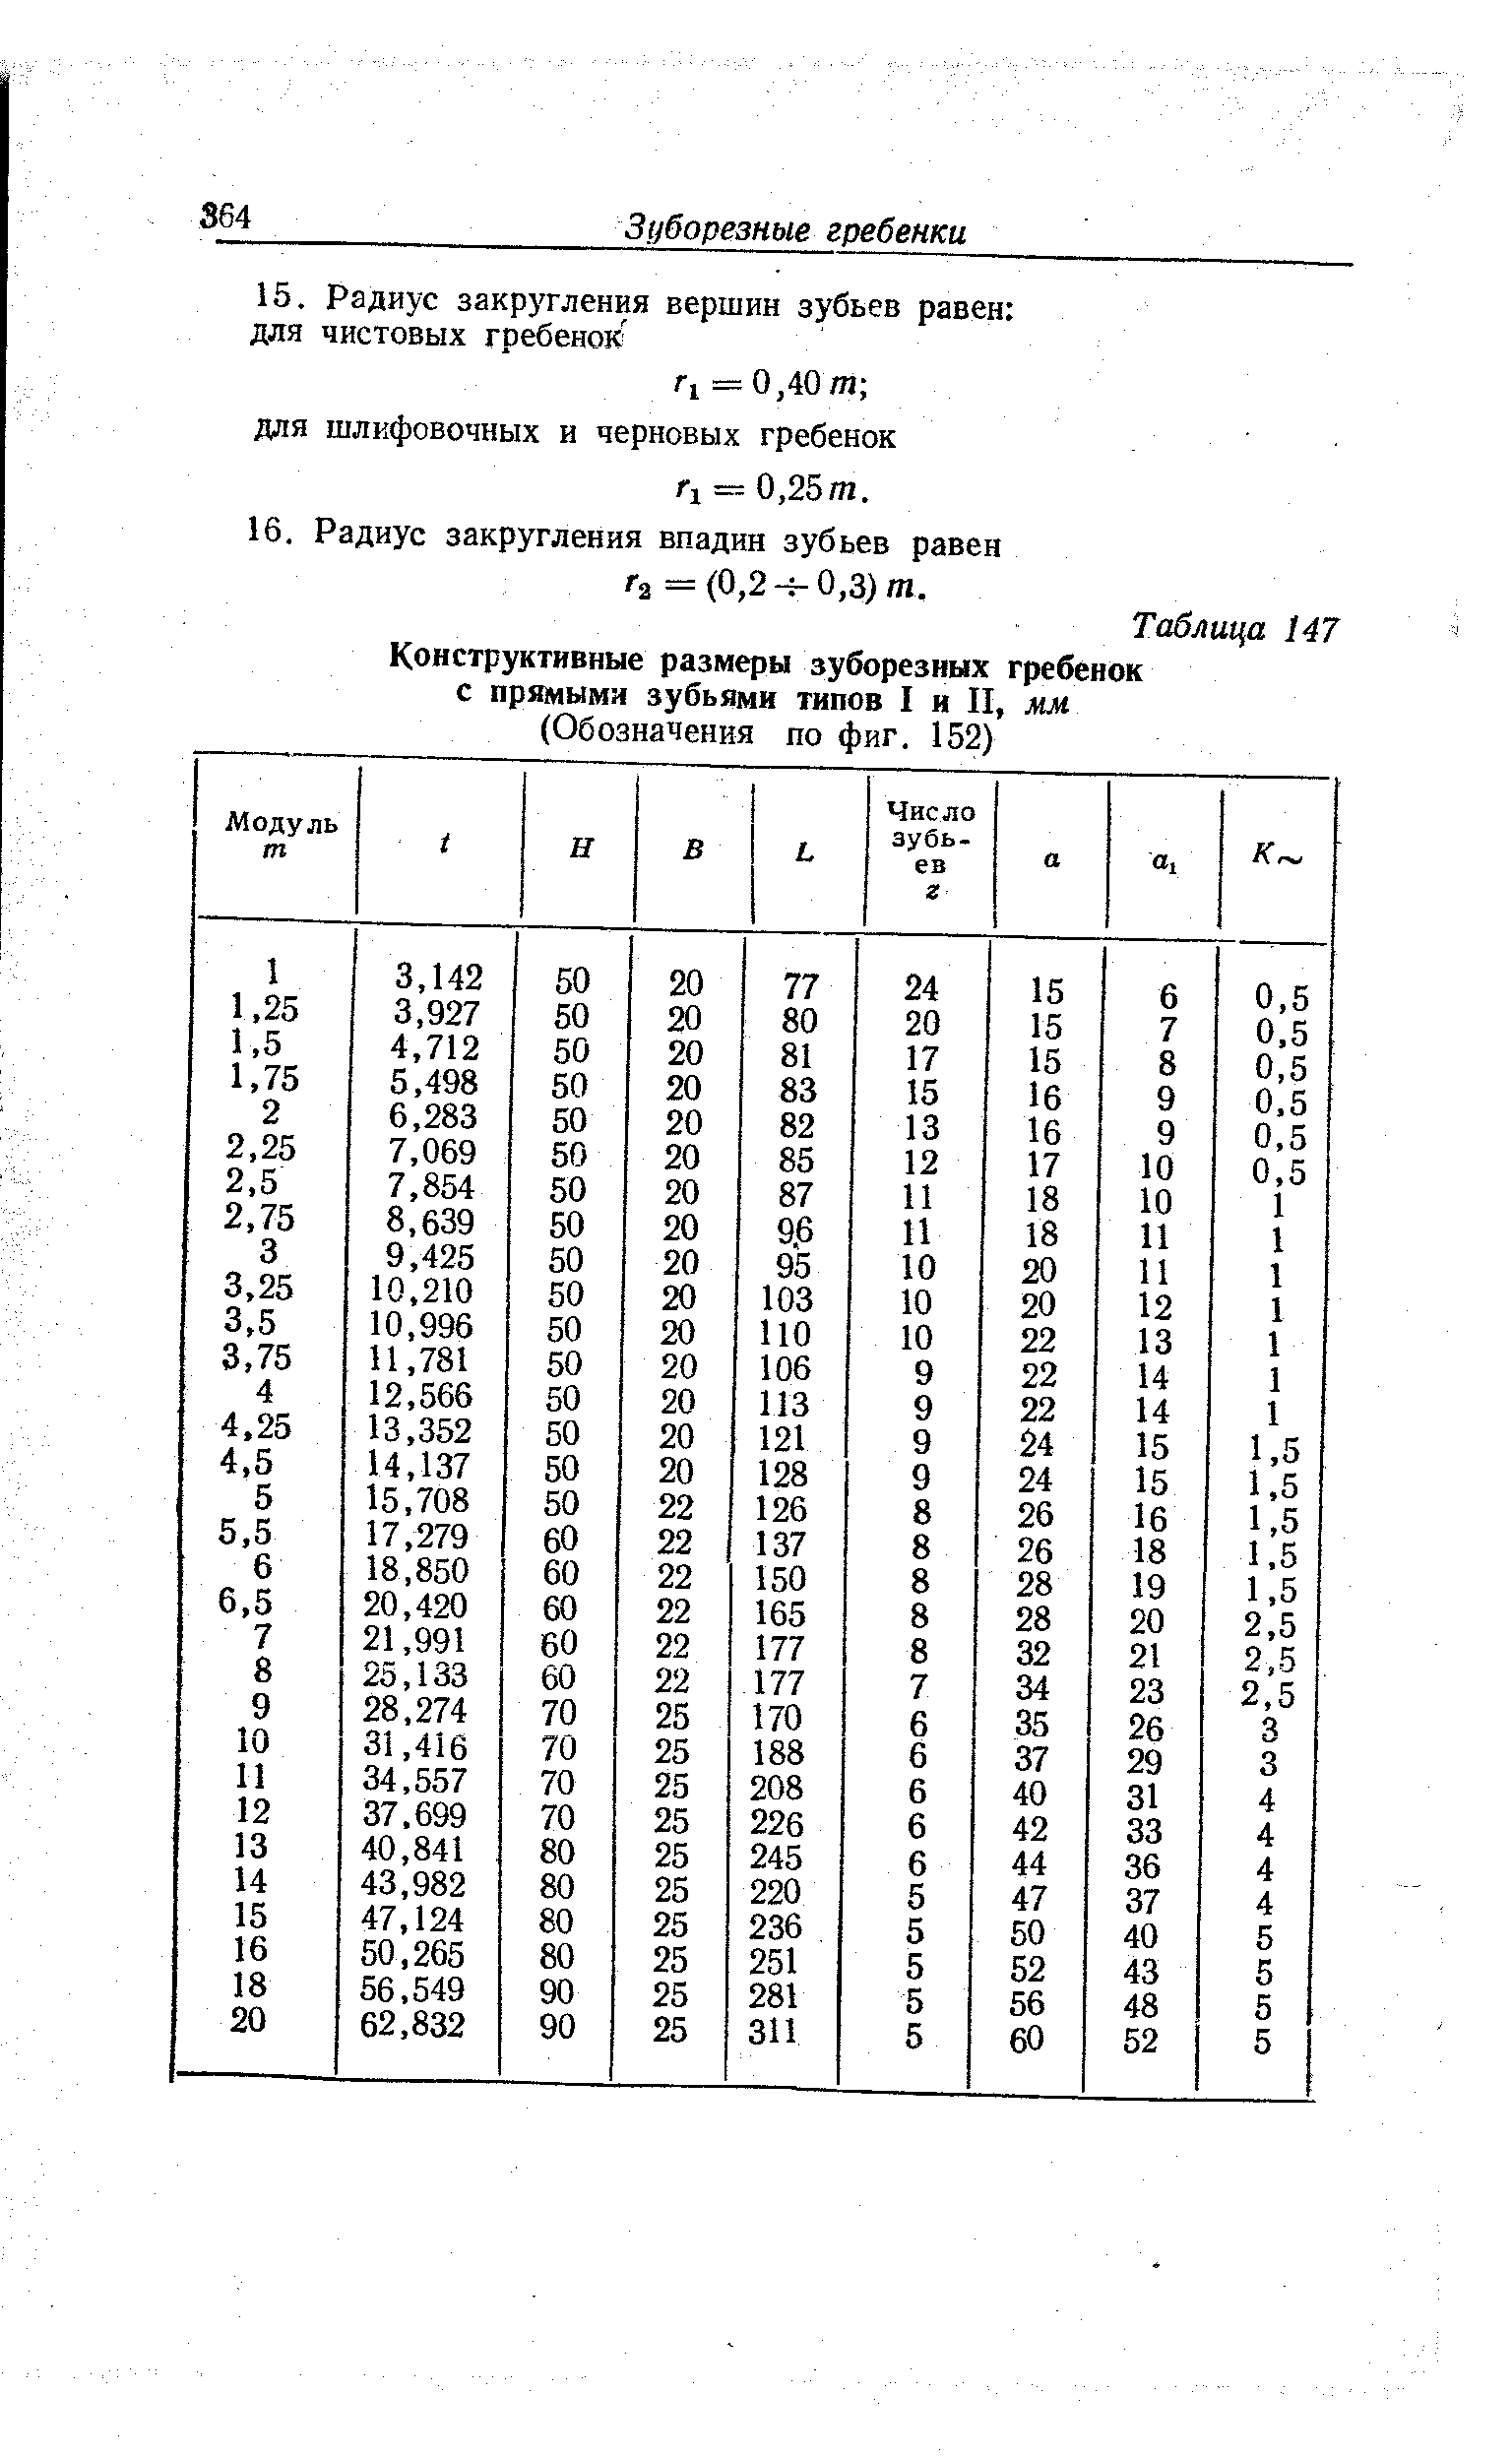 Таблица 147 Конструктивные размеры зуборезных гребенок с <a href="/info/12122">прямыми зубьями</a> типов I и II, лш
